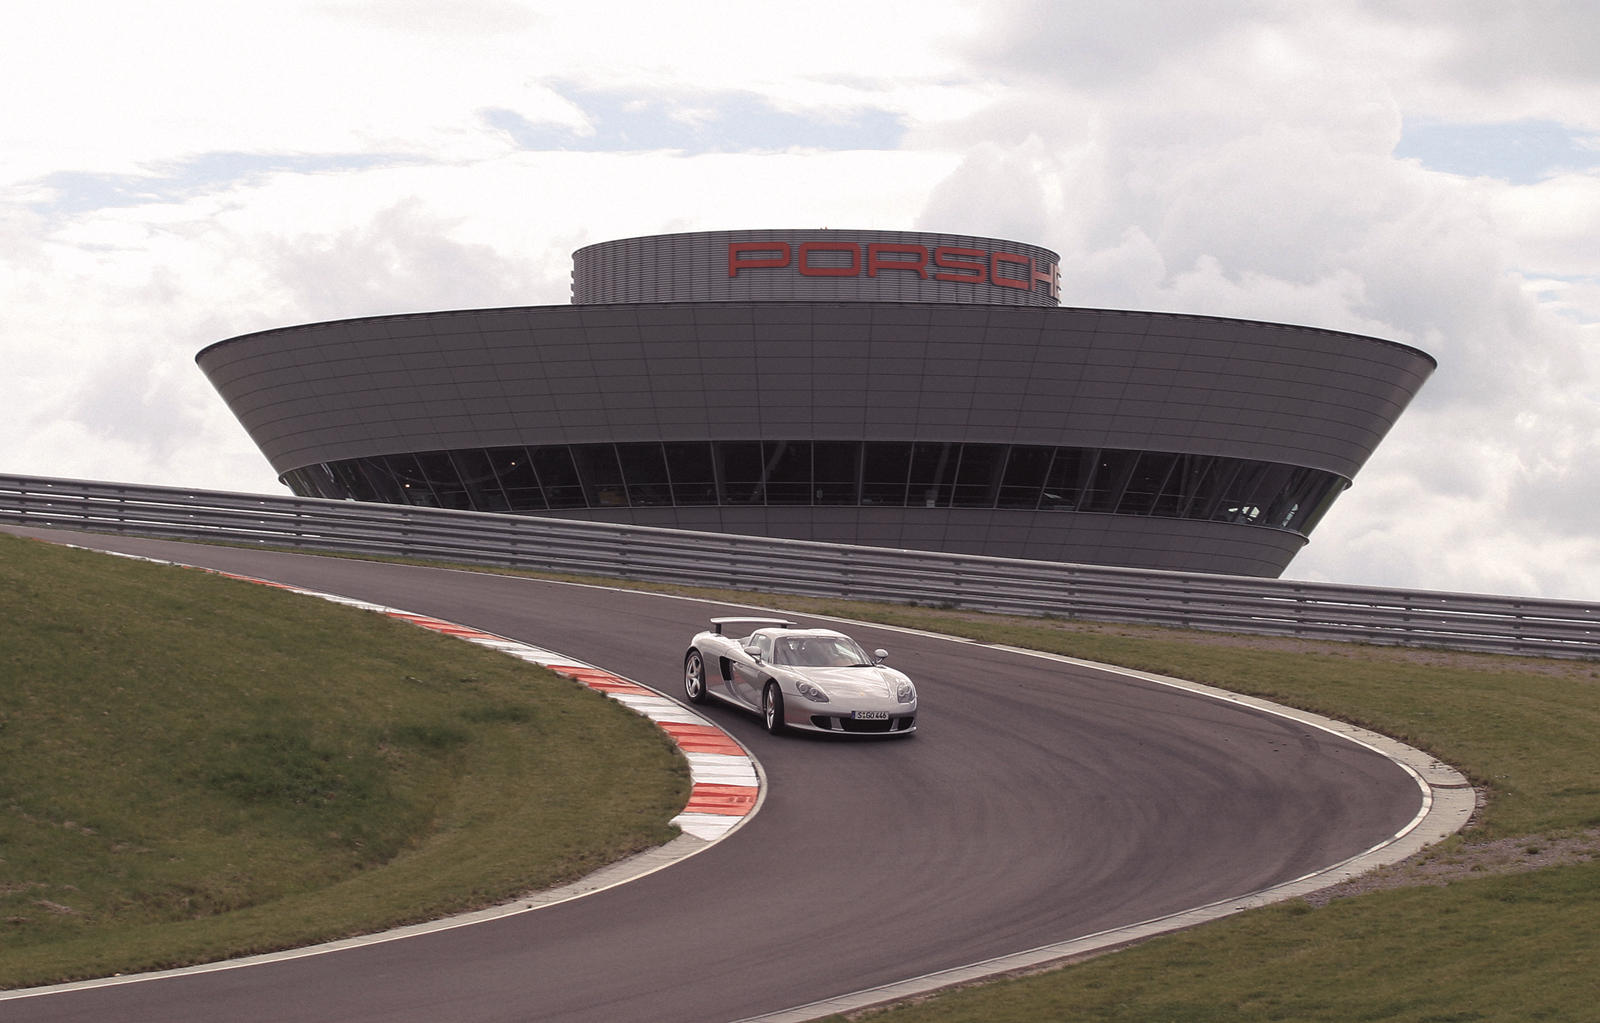 Porsche Carrera GT - один из величайших хитов Porsche всех времен, несмотря на его безупречную репутацию и сложное управление. Но центральный двигатель V10, производный от F1, развивающий 603 лошадиных силы при 5,7 литрах рабочего объема, направляющи